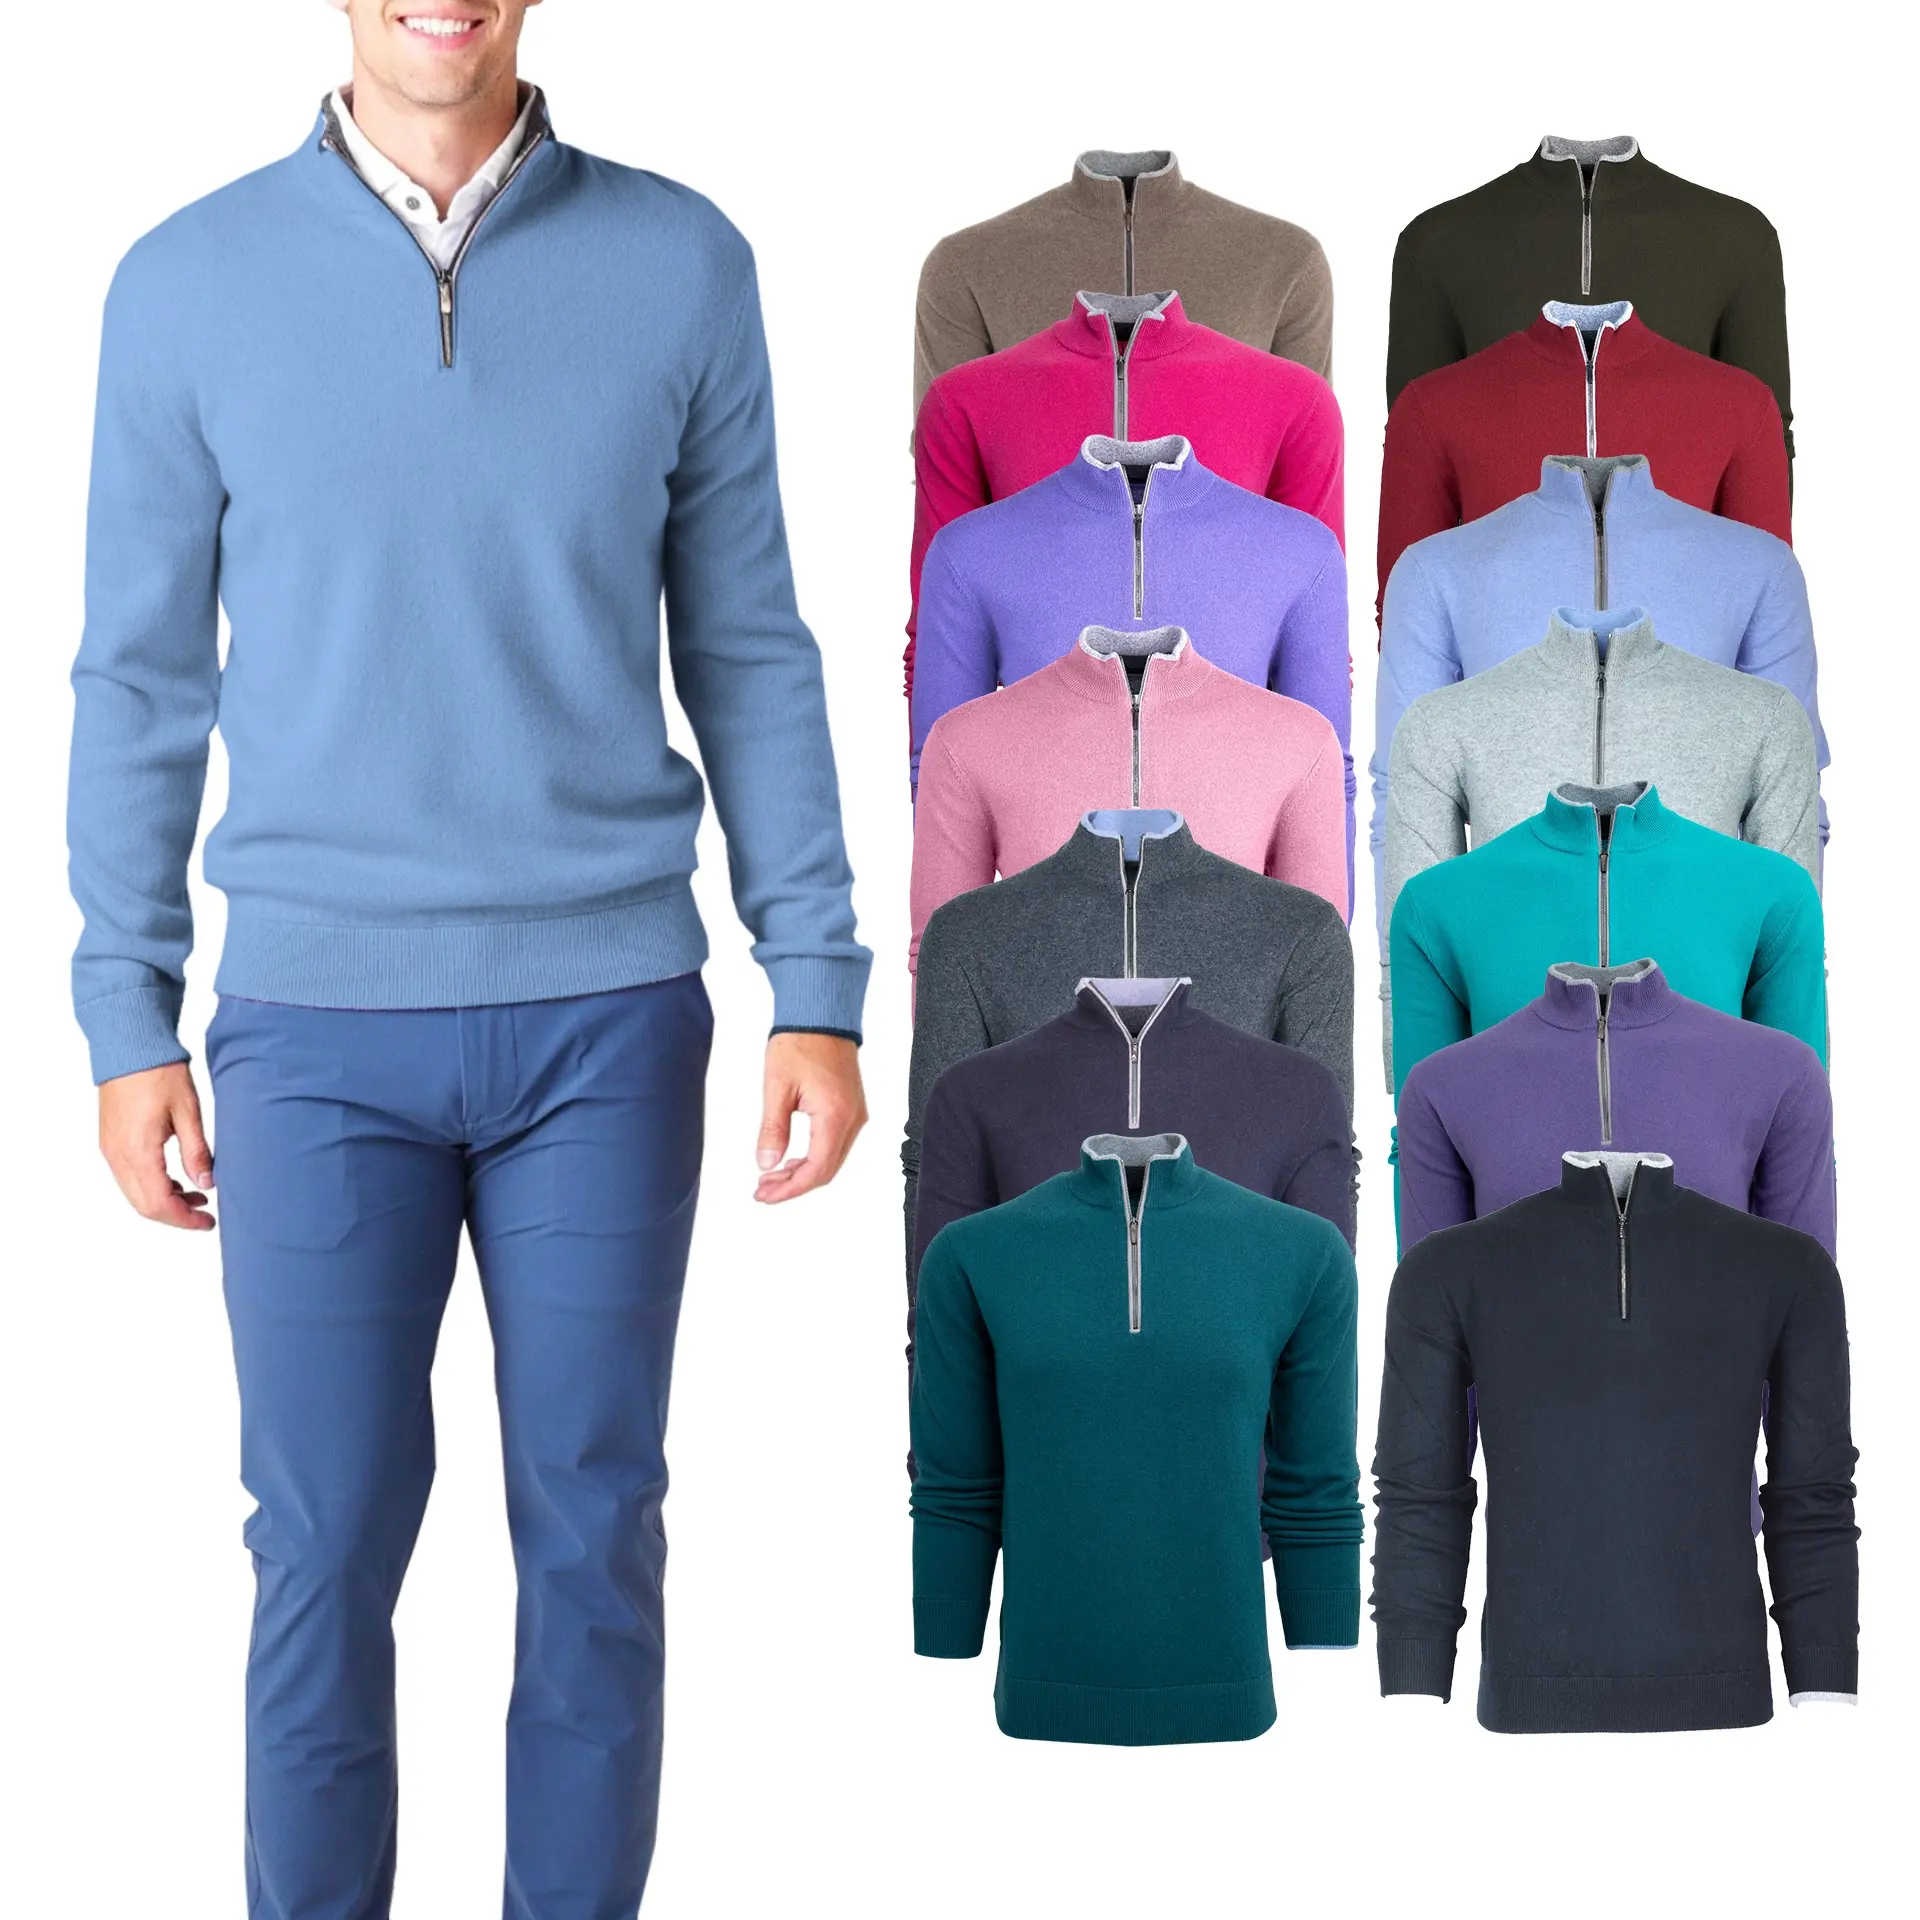 도매 고품질 경량 1/4 분기 지퍼 빠른 건조 긴 소매 남자 골프 스웨터 로고 사용자 정의 풀오버